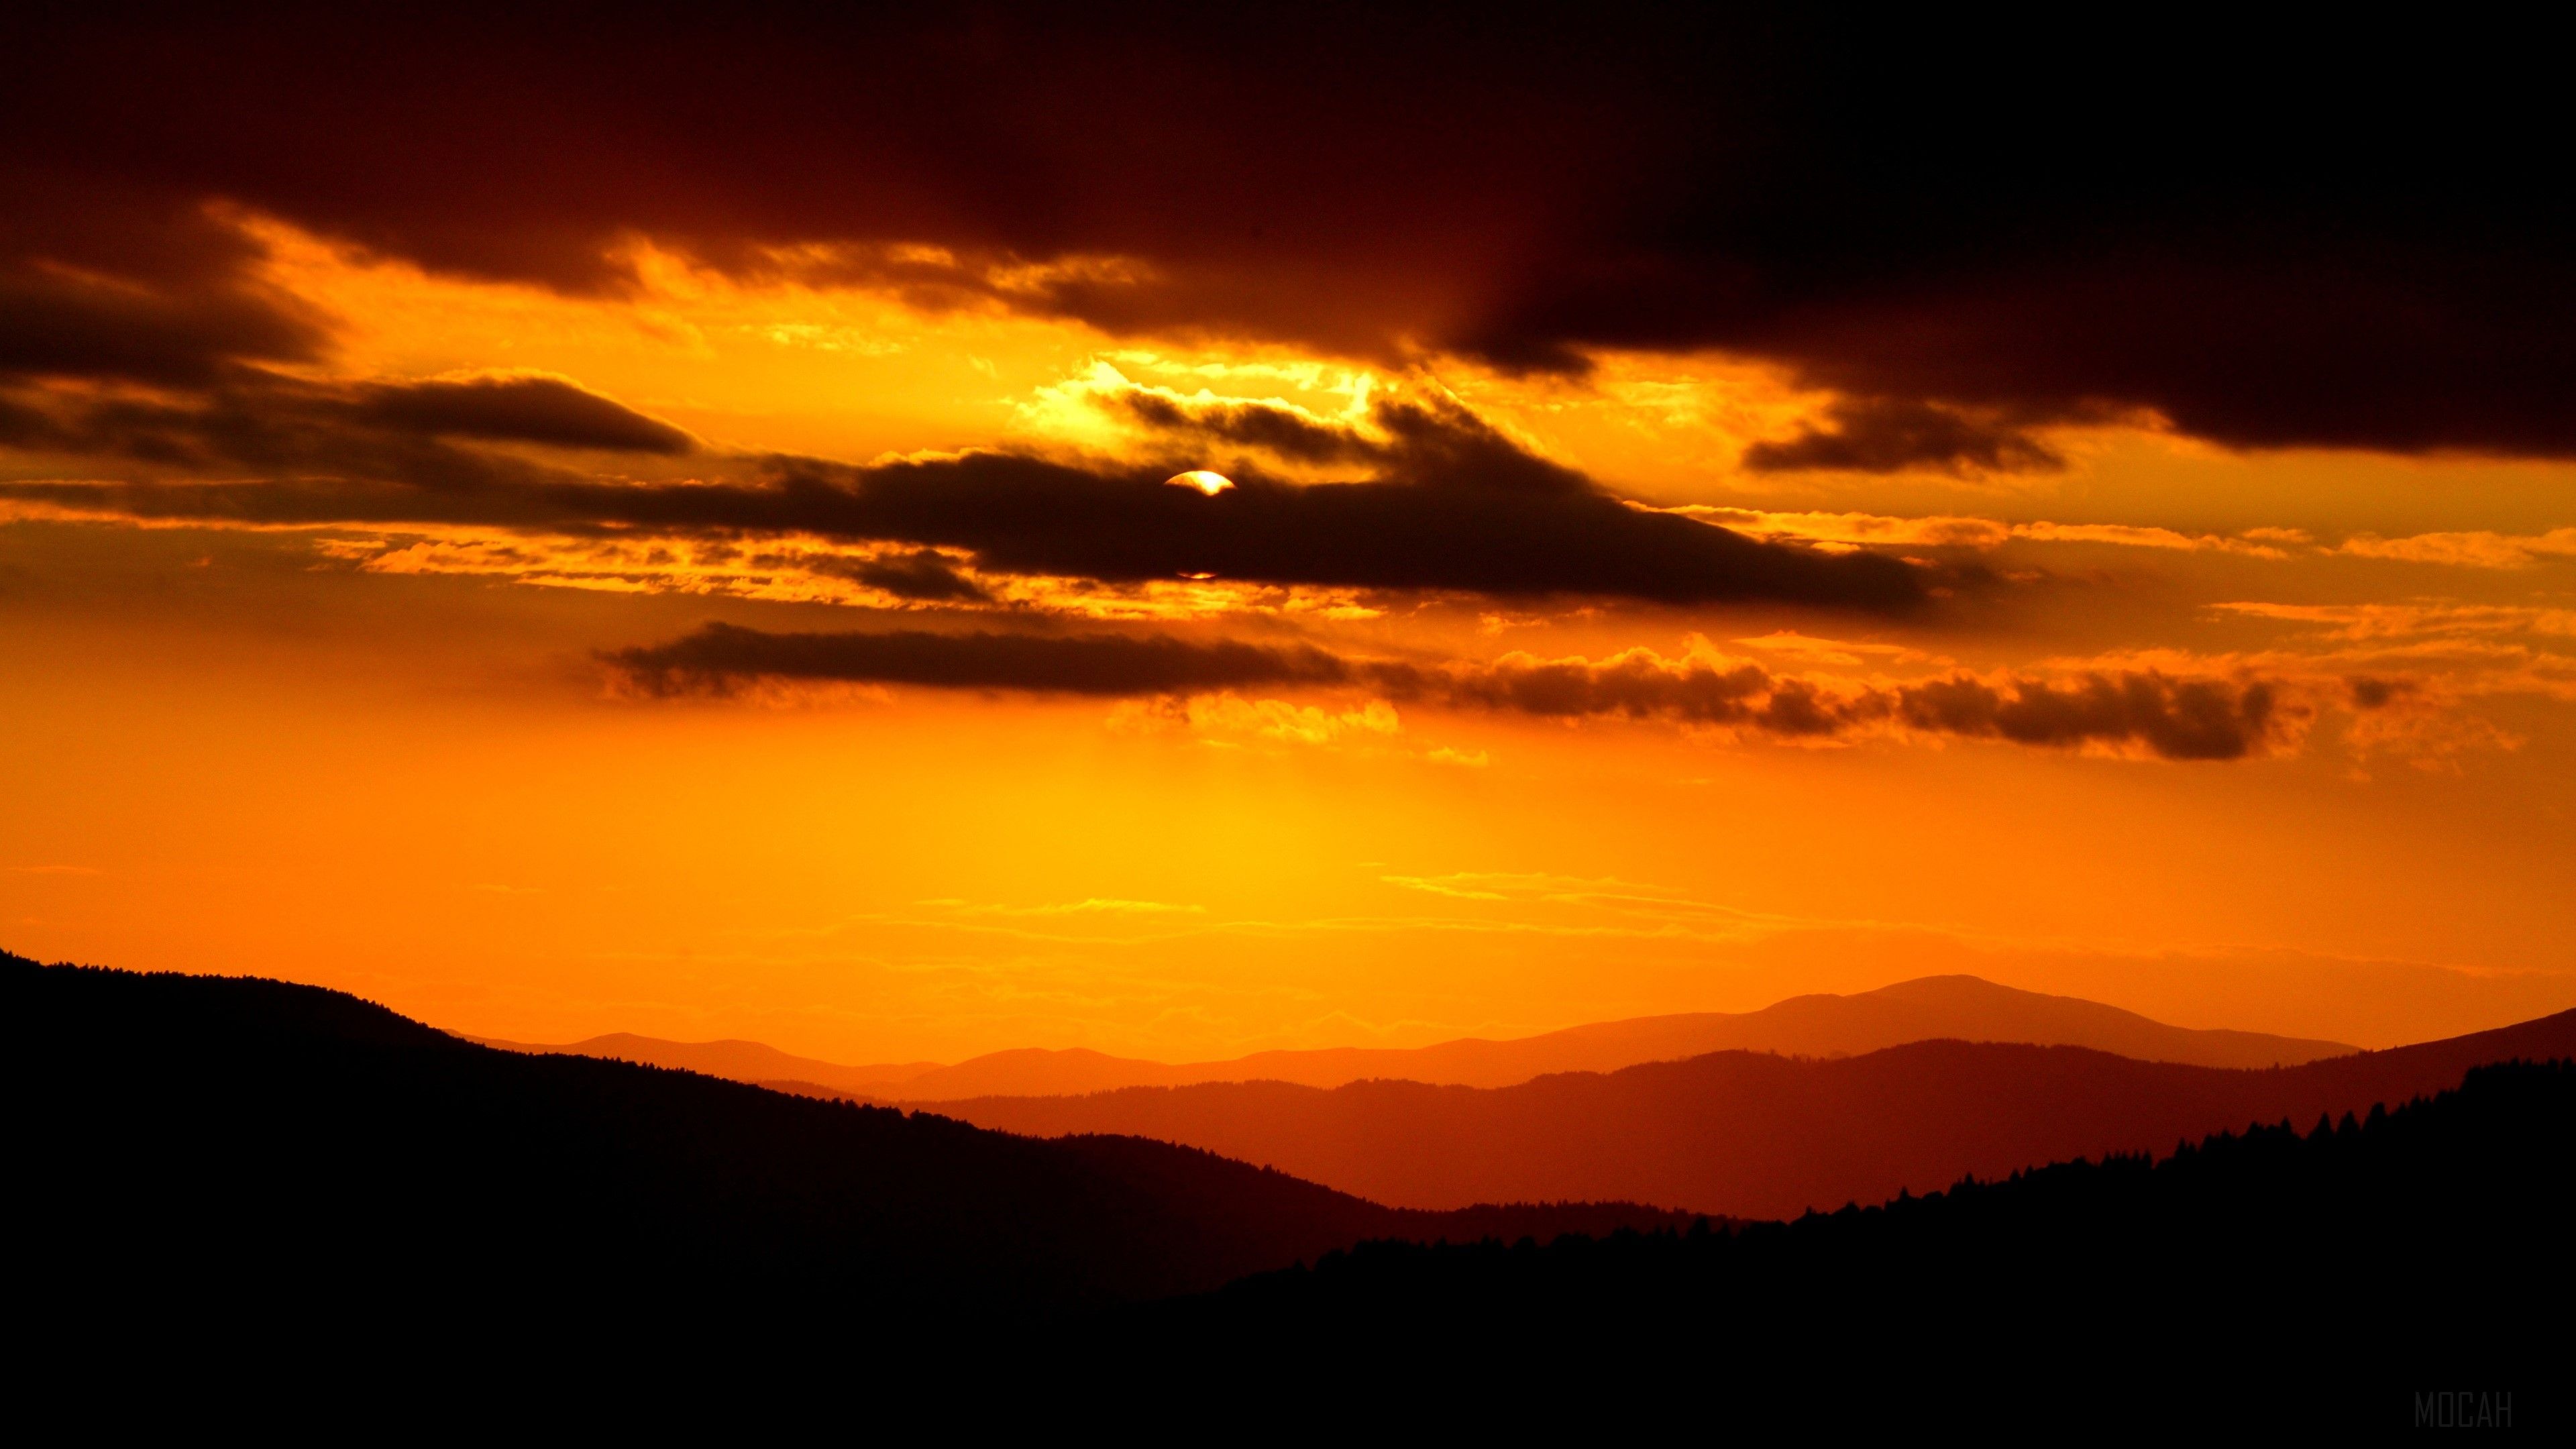 A dark orange sunset over a mountain range. - Dark orange